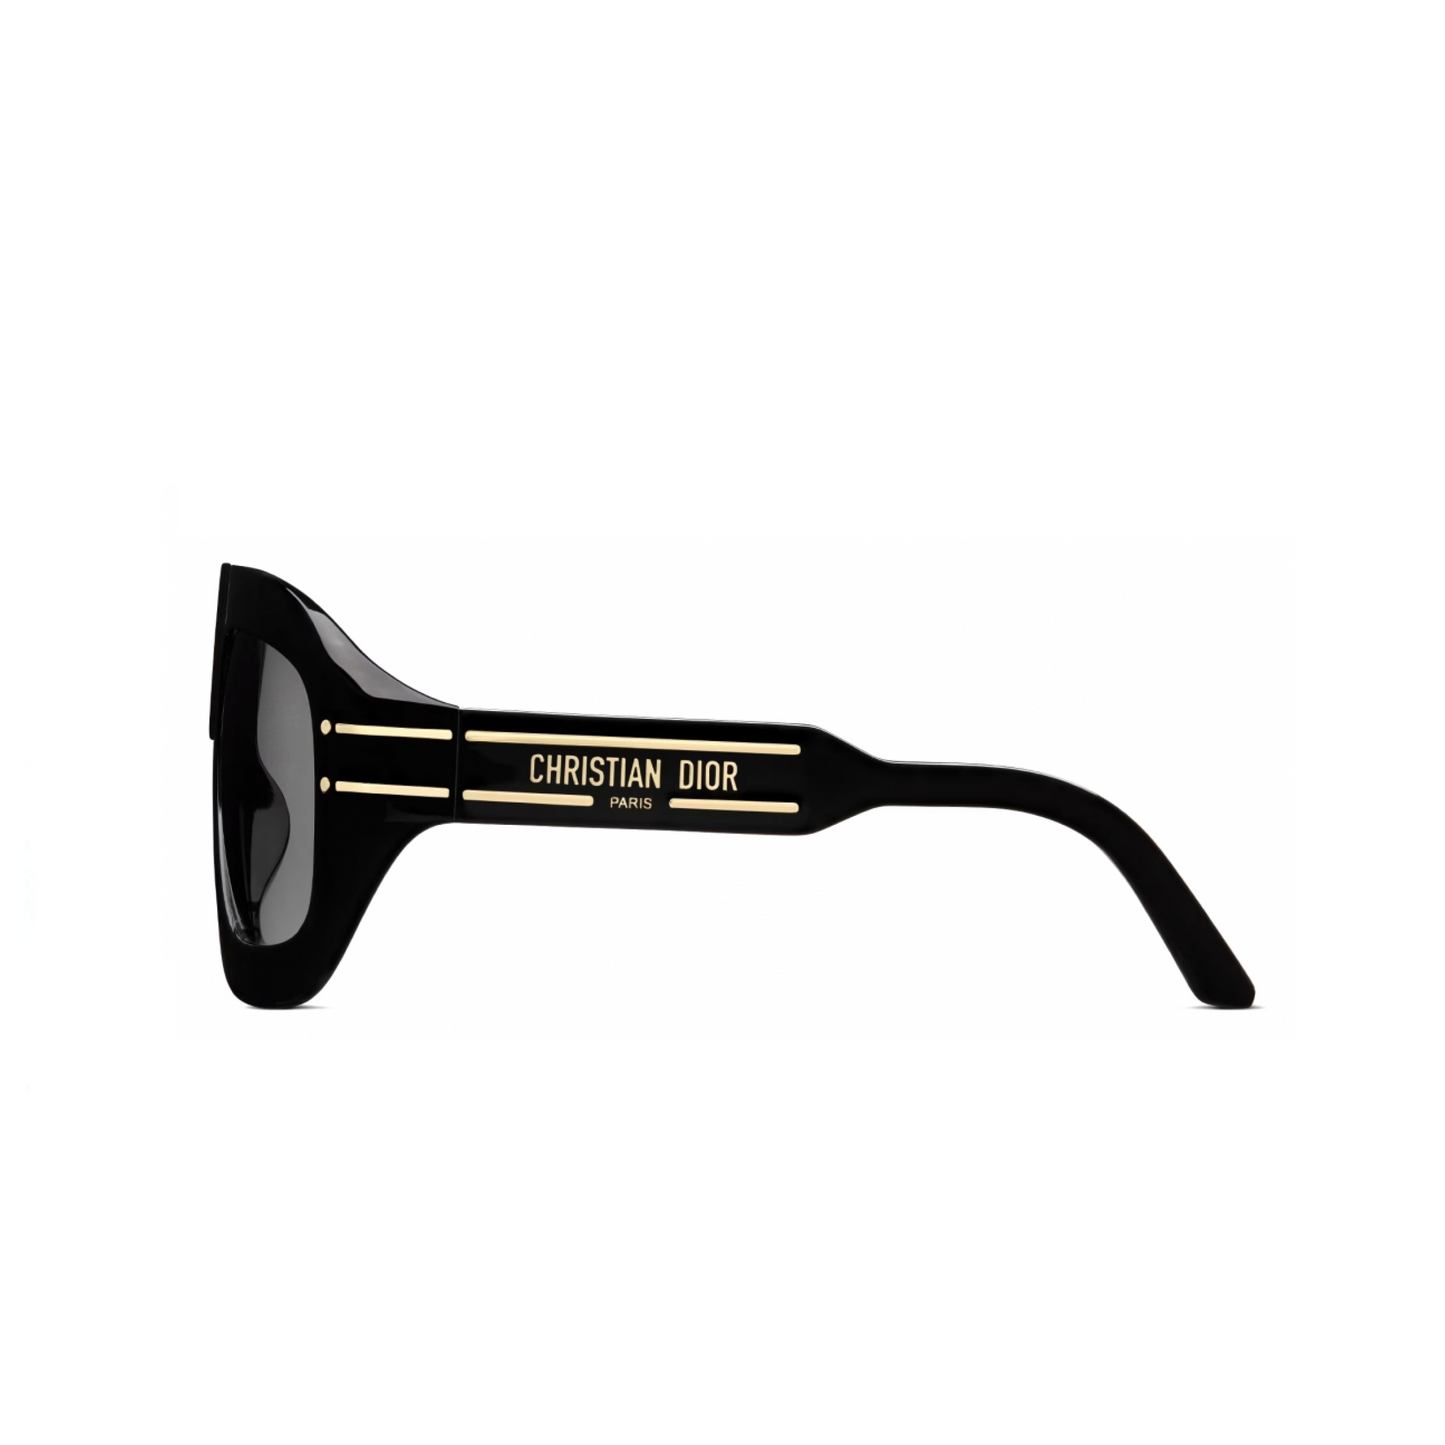 DiorSignature M1U 10A158 Sunglasses in Black